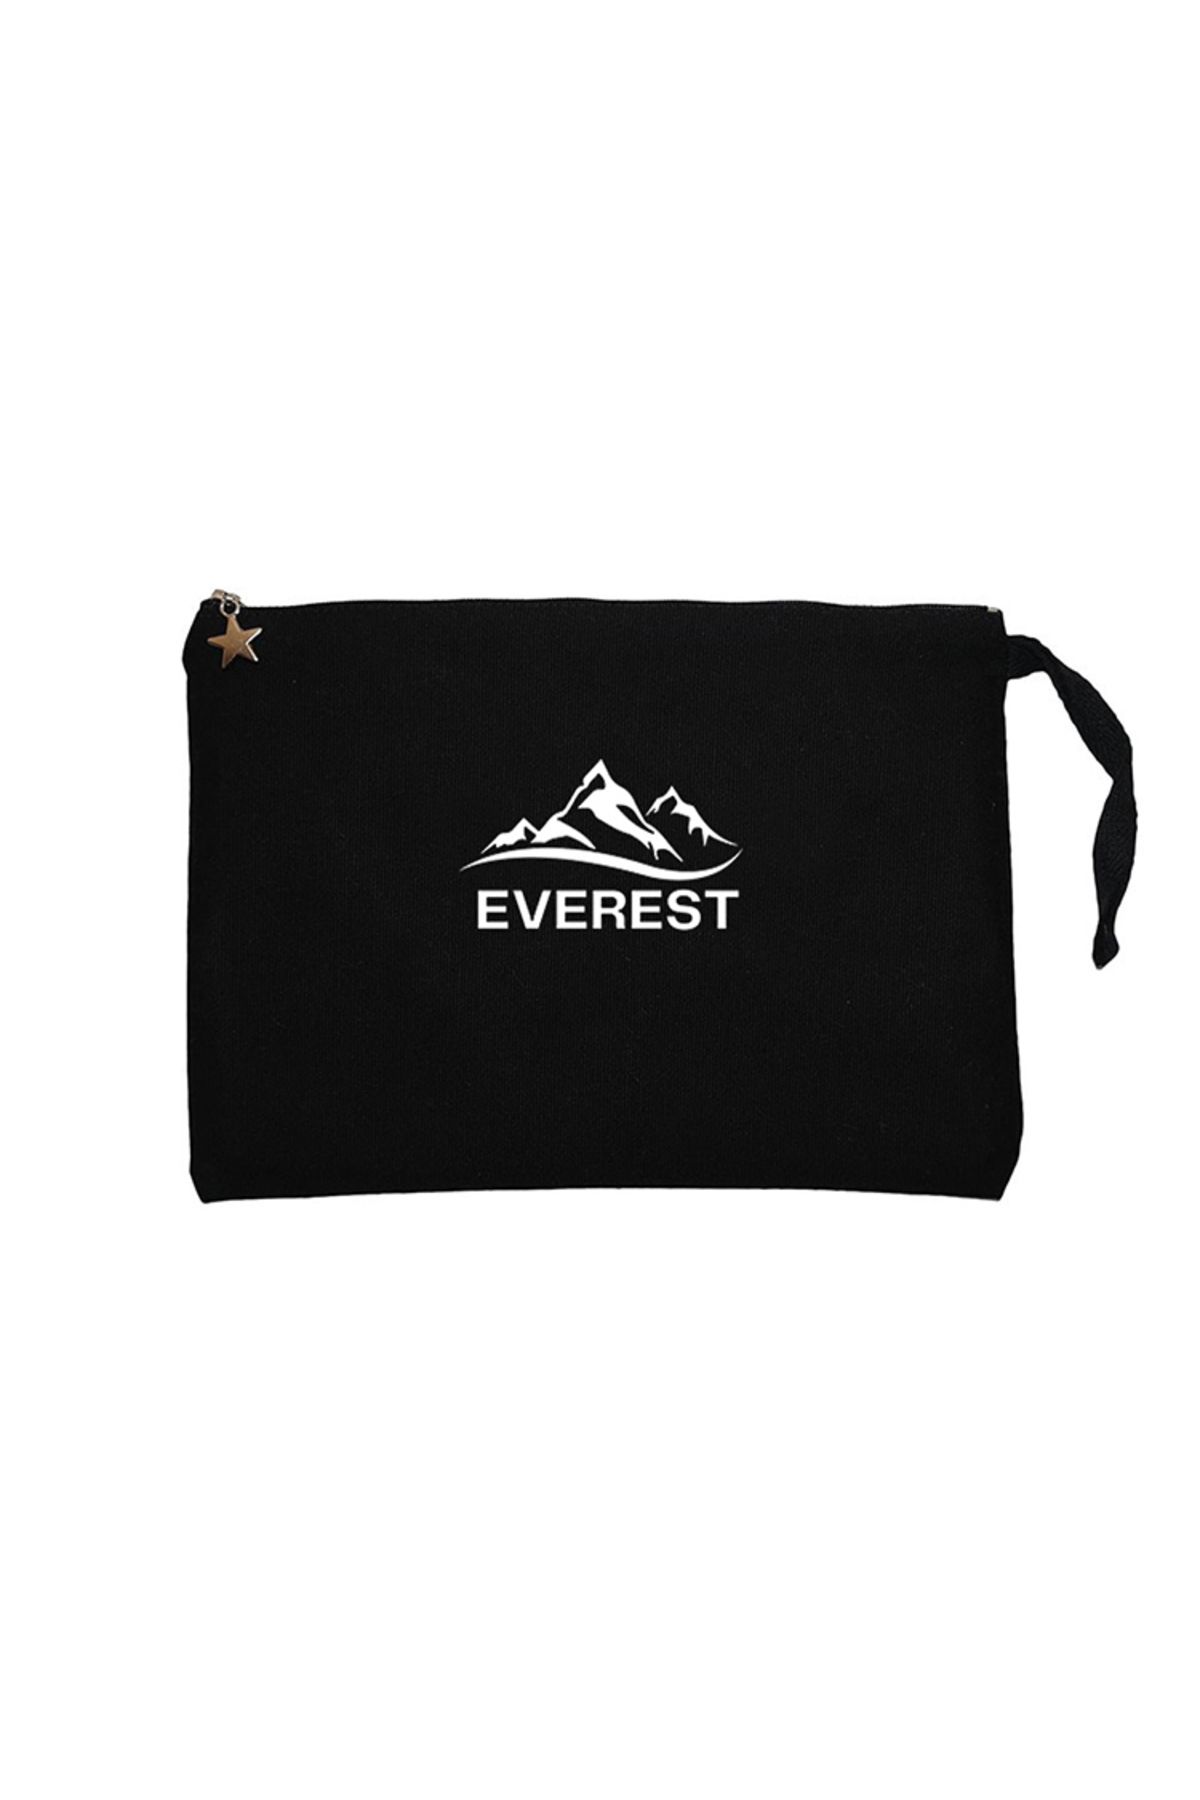 Z zepplin Everest Classic Siyah Clutch Astarlı Cüzdan / El Çantası